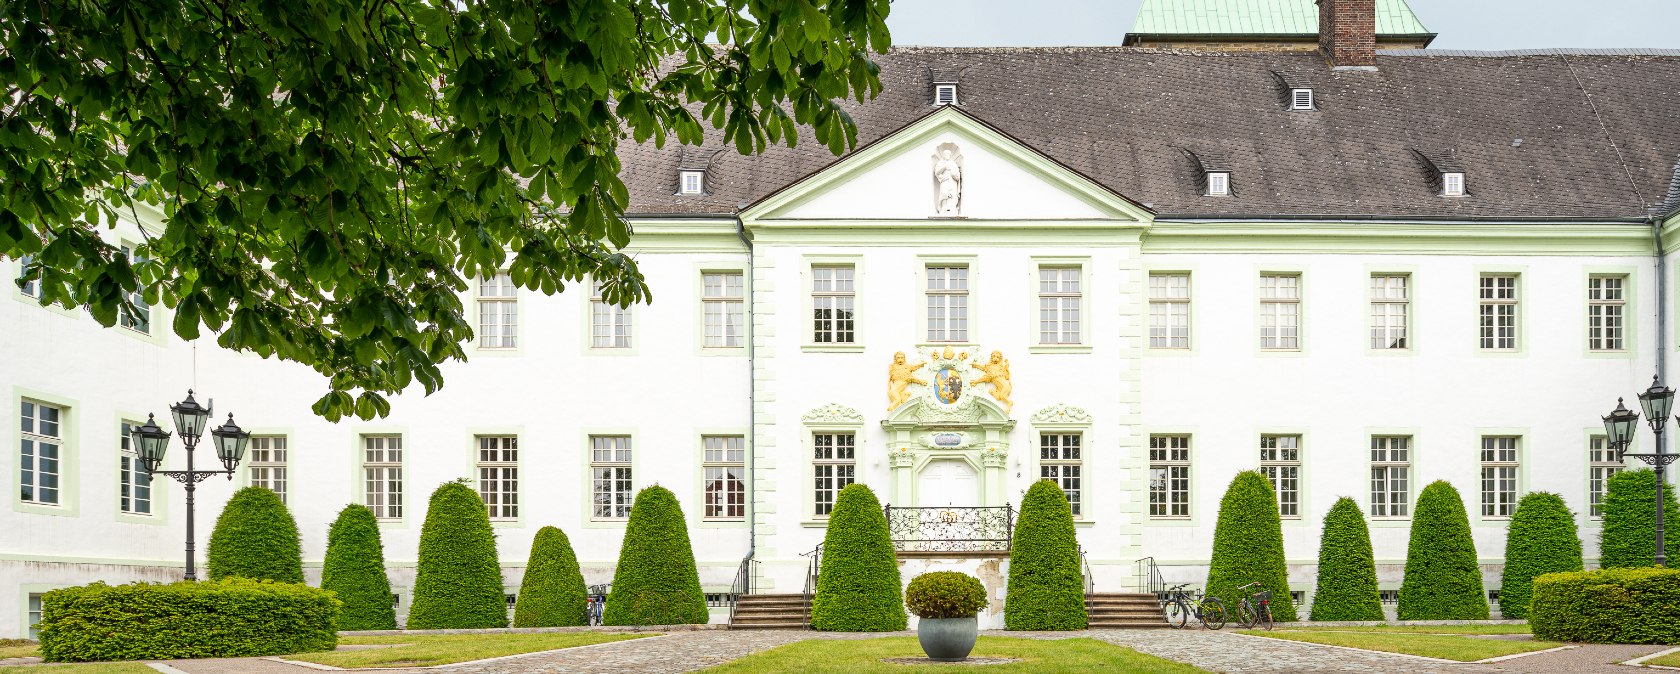 Der barocke Stil des ehemaligen Konventsgebäudes ist unverkennbar, © Münsterland e.V., Philipp Fölting